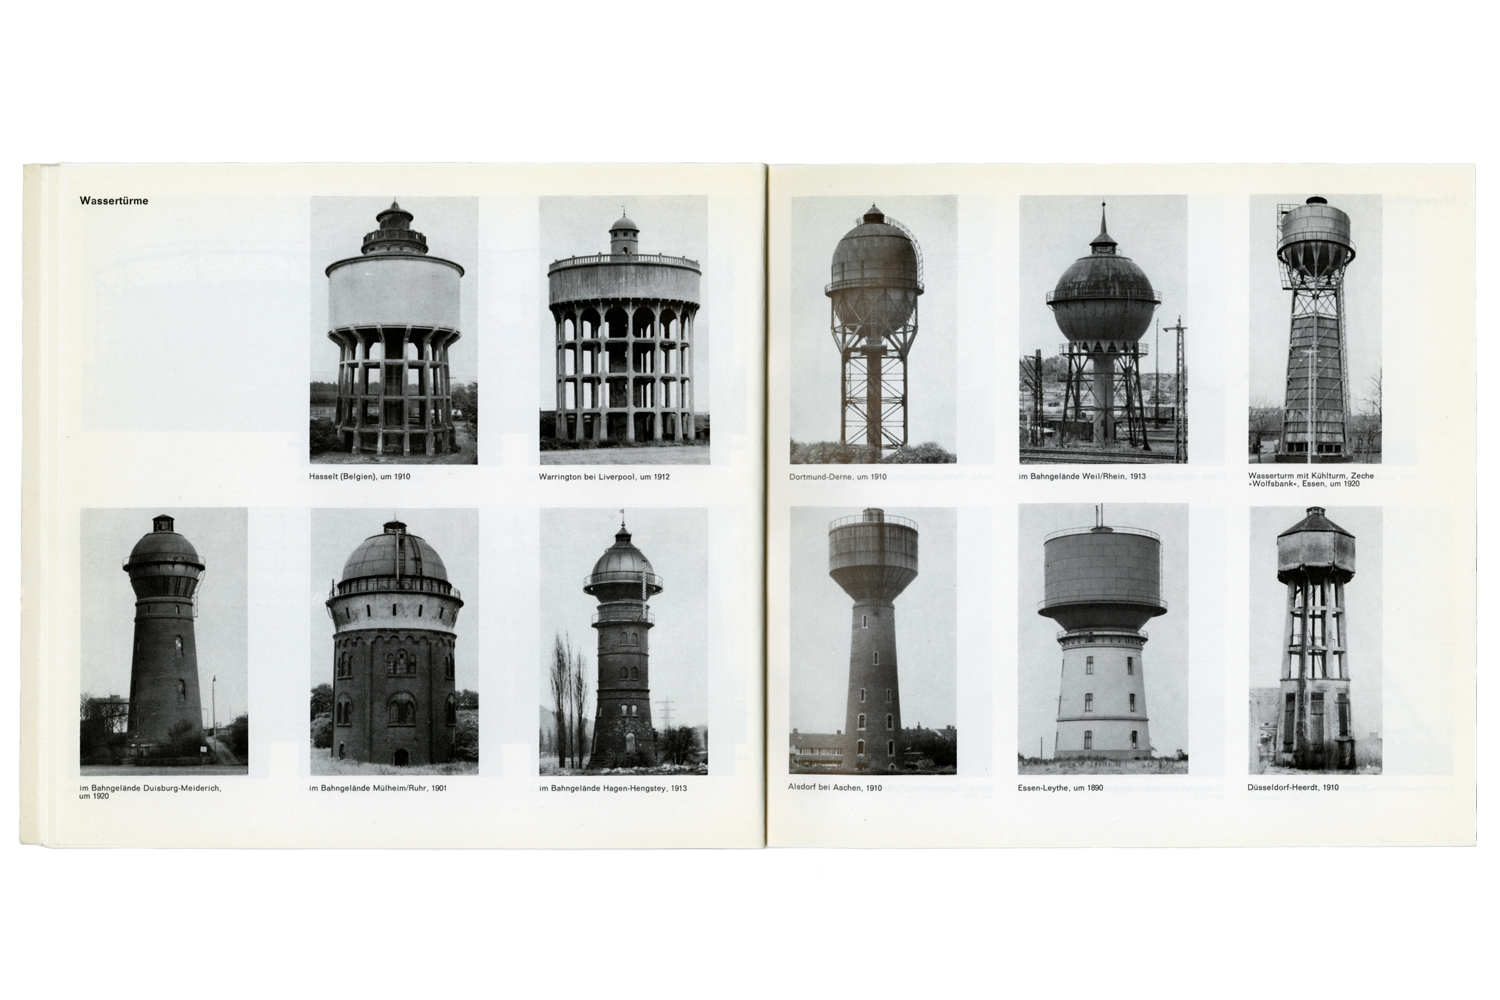 Image: Industriebauten 1830-1930, Exposition catalogue